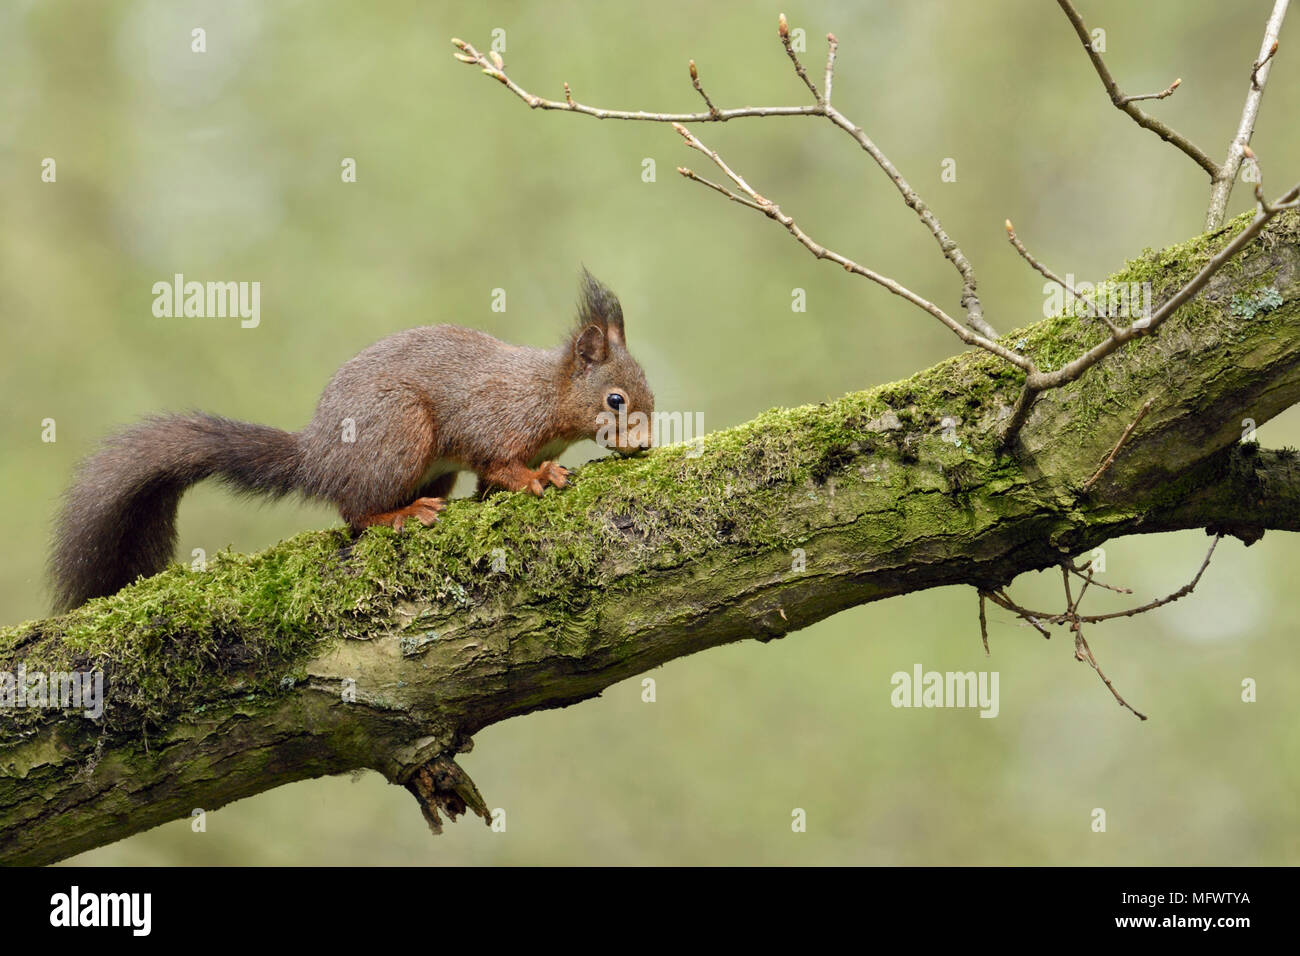 Eichhörnchen/Europaeisches Eichhörnchen (Sciurus vulgaris), climbin in einem in einer Eiche, für Lebensmittel, Fütterung, Wildlife, Europa suchen. Stockfoto